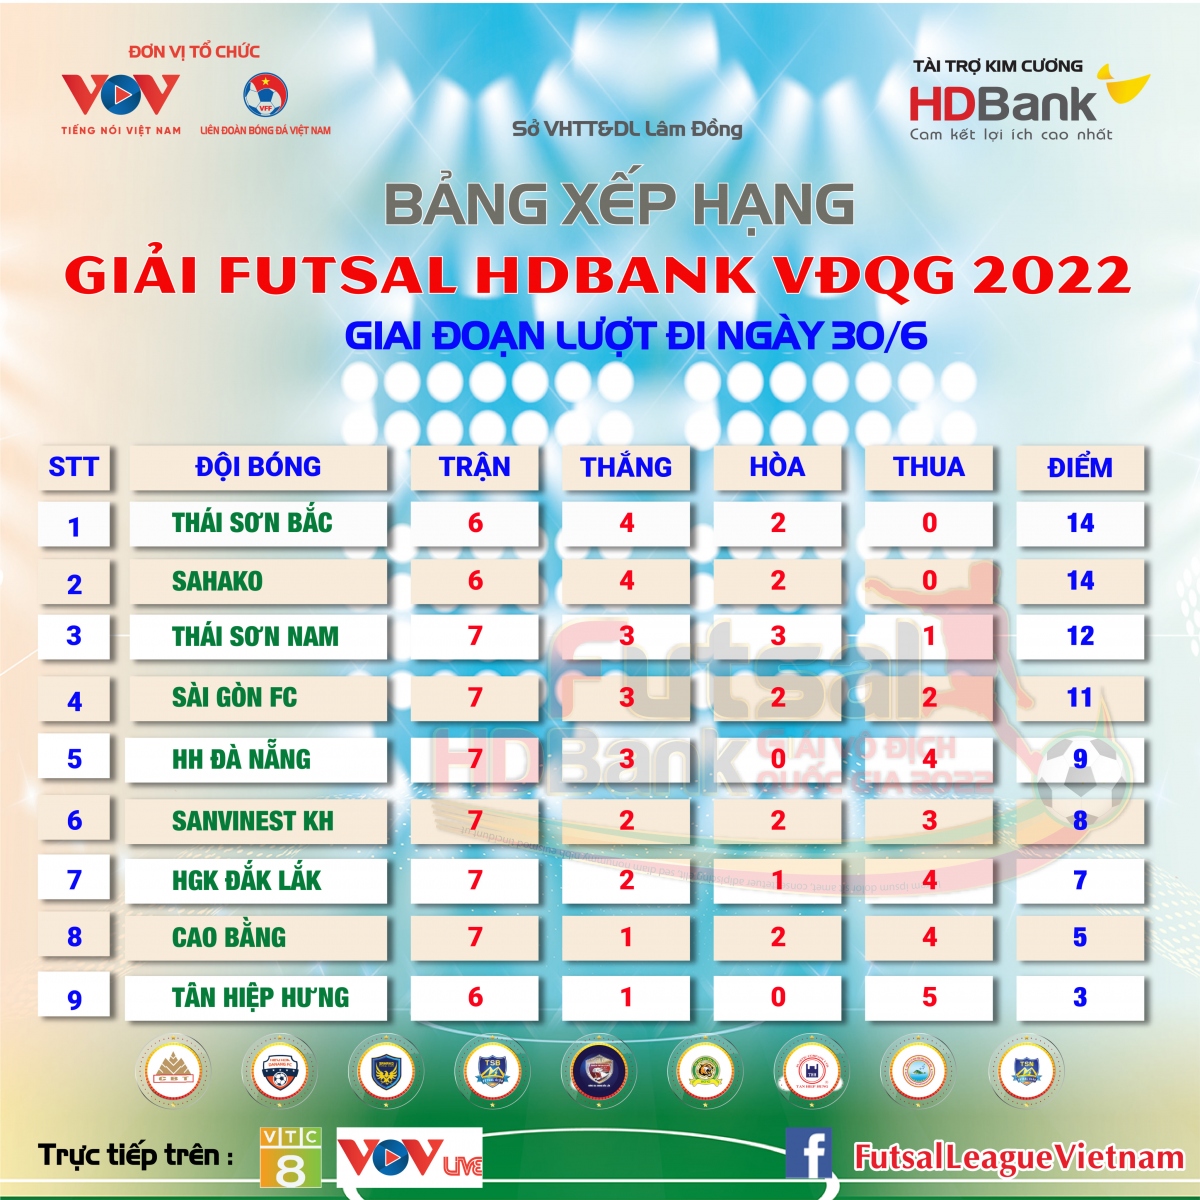 Bảng xếp hạng Futsal HDBank VĐQG 2022 mới nhất: Thái Sơn Nam lên thứ 3